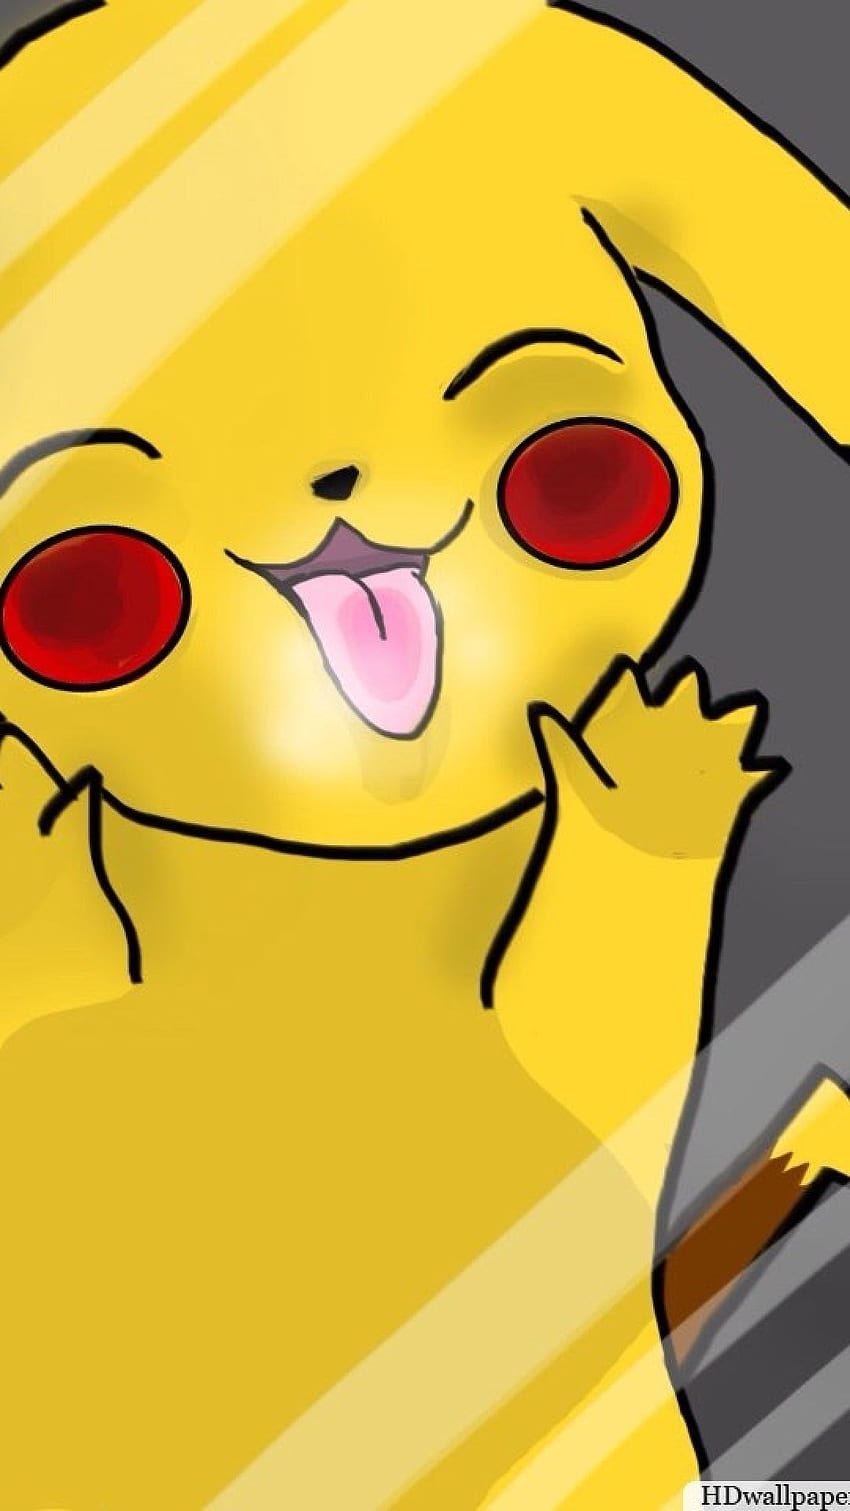 Pikachu luôn là chú thú được yêu thích nhất trong thế giới Pokemon. Bạn sẽ không thể rời mắt khỏi những hình ảnh đáng yêu của chú thú này.